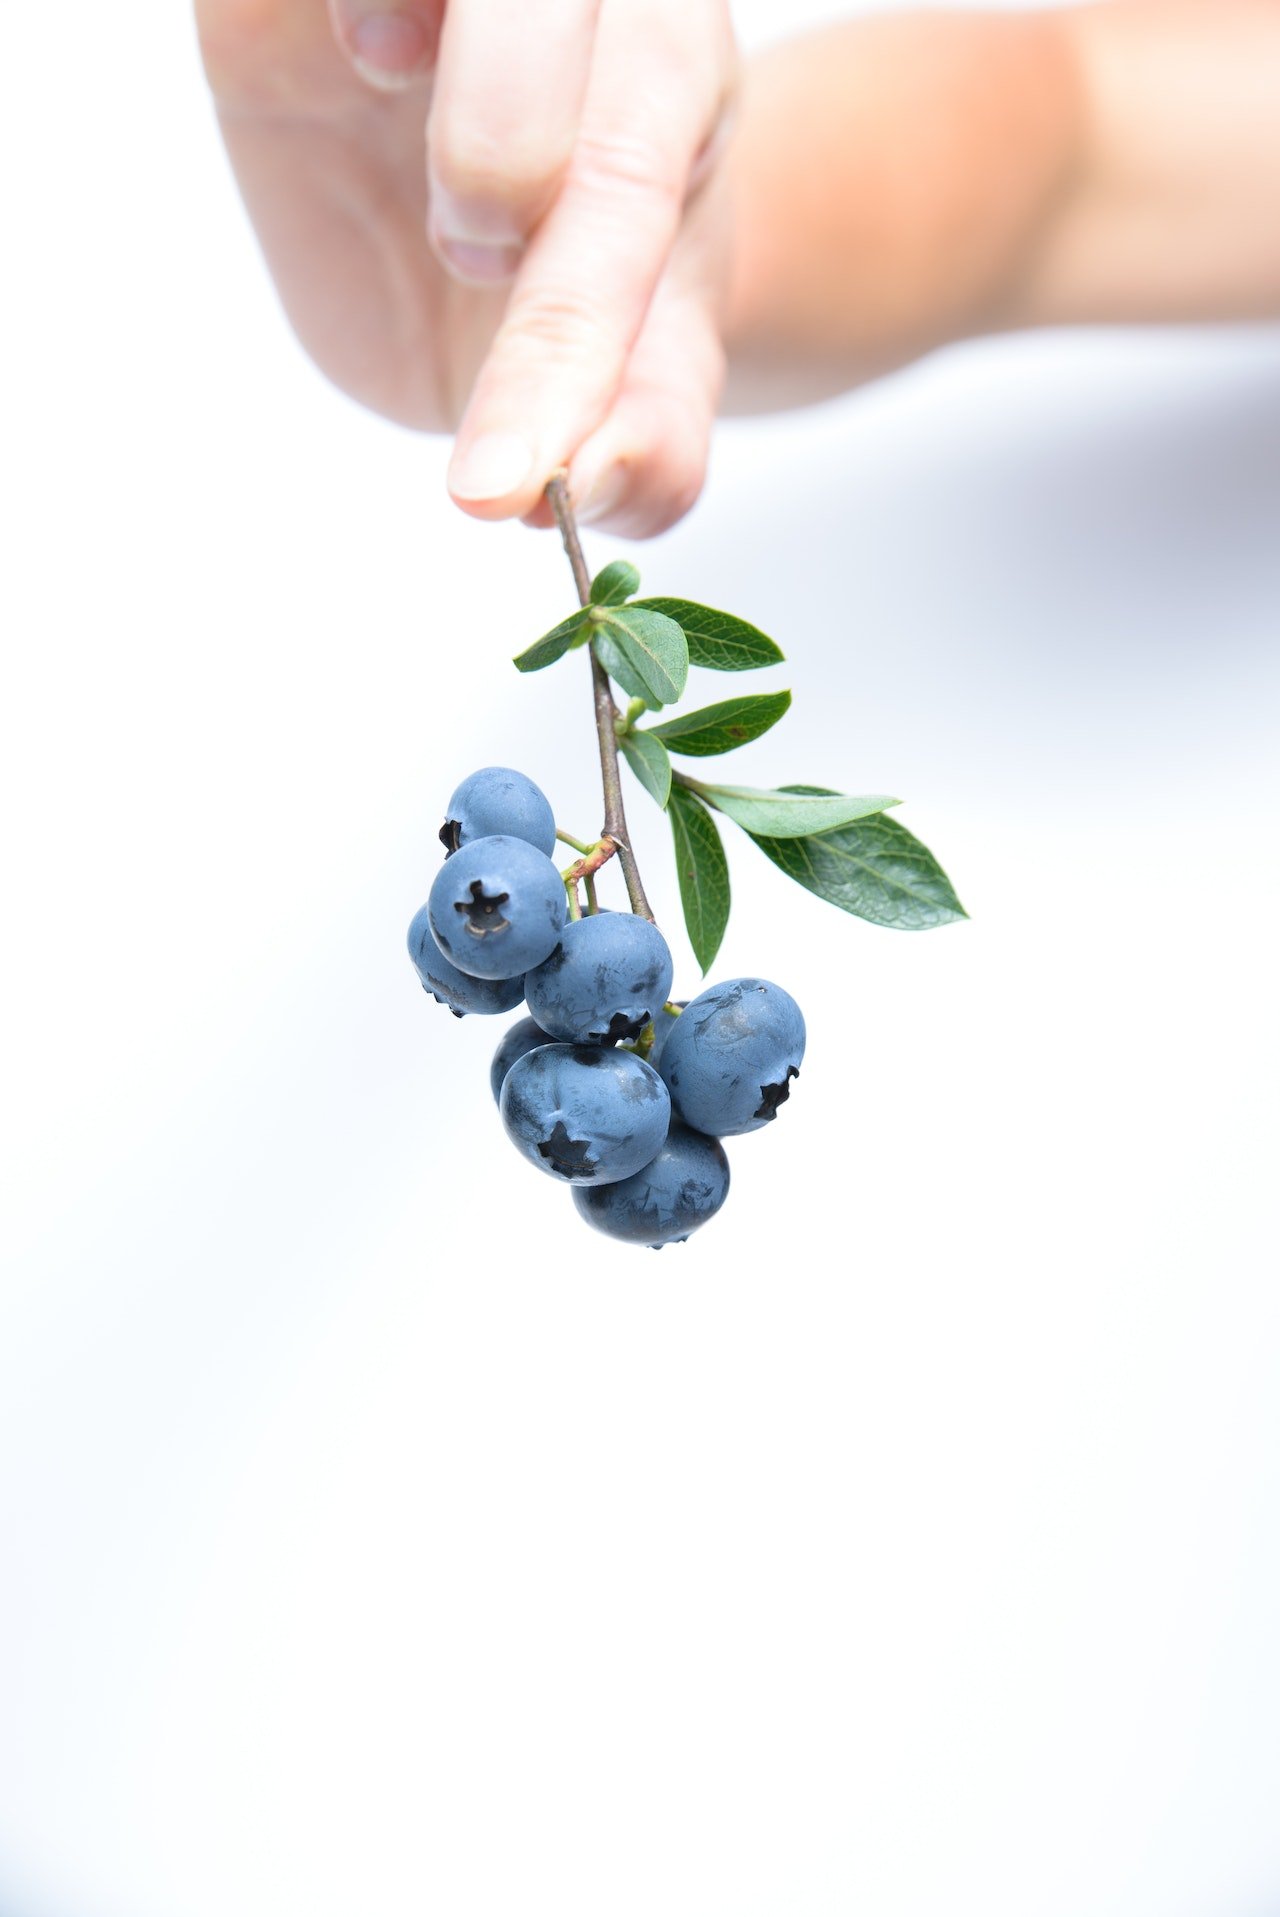 μυρτιλα/ blueberries